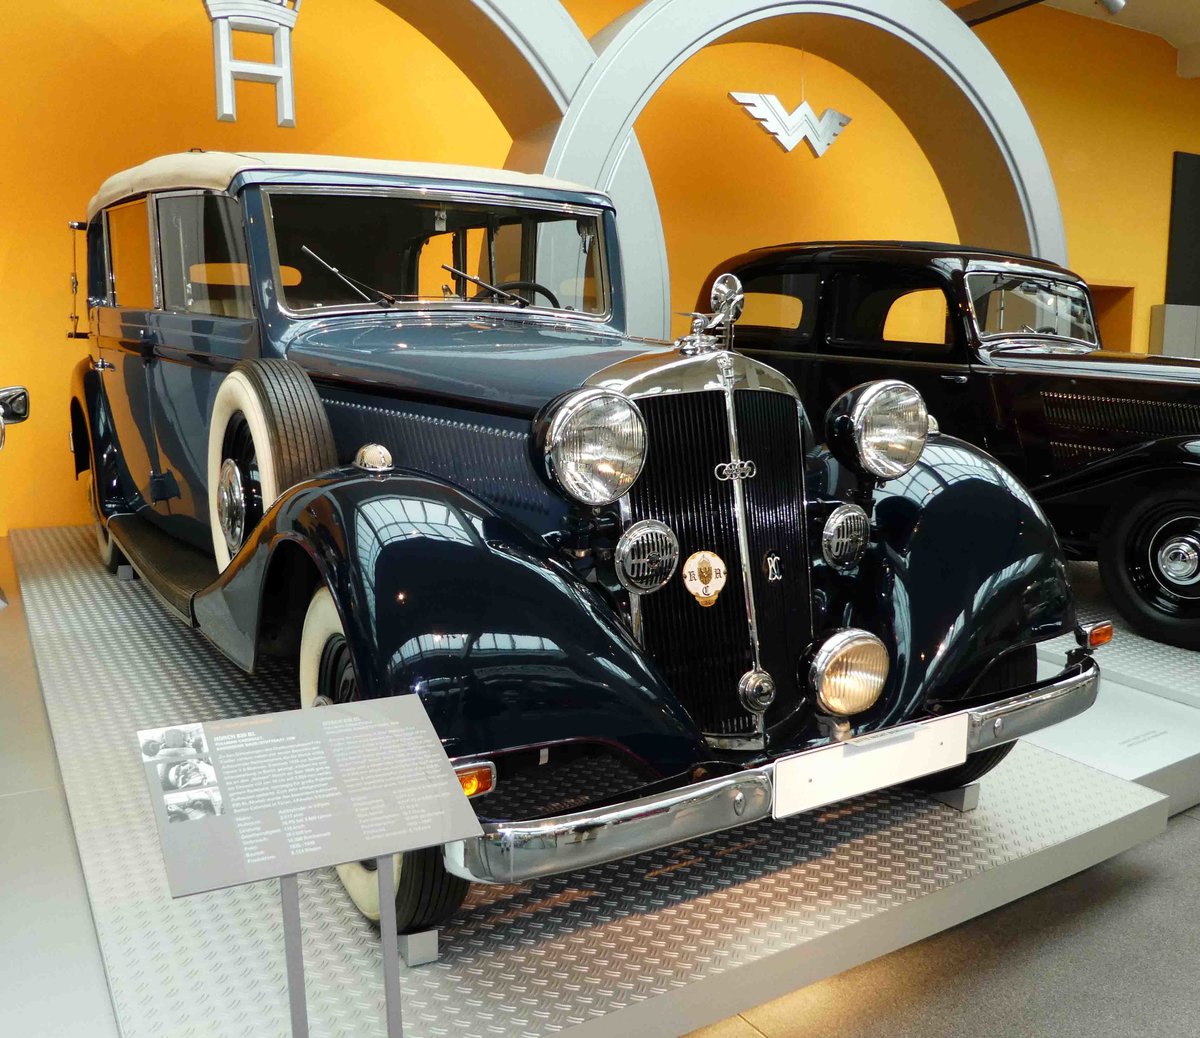 =Horch 830 BL Pullman-Cabriolet, Bj. 1936, 3517 ccm, 75 PS, gesehen im August Horch Museum Zwickau, Juli 2016.